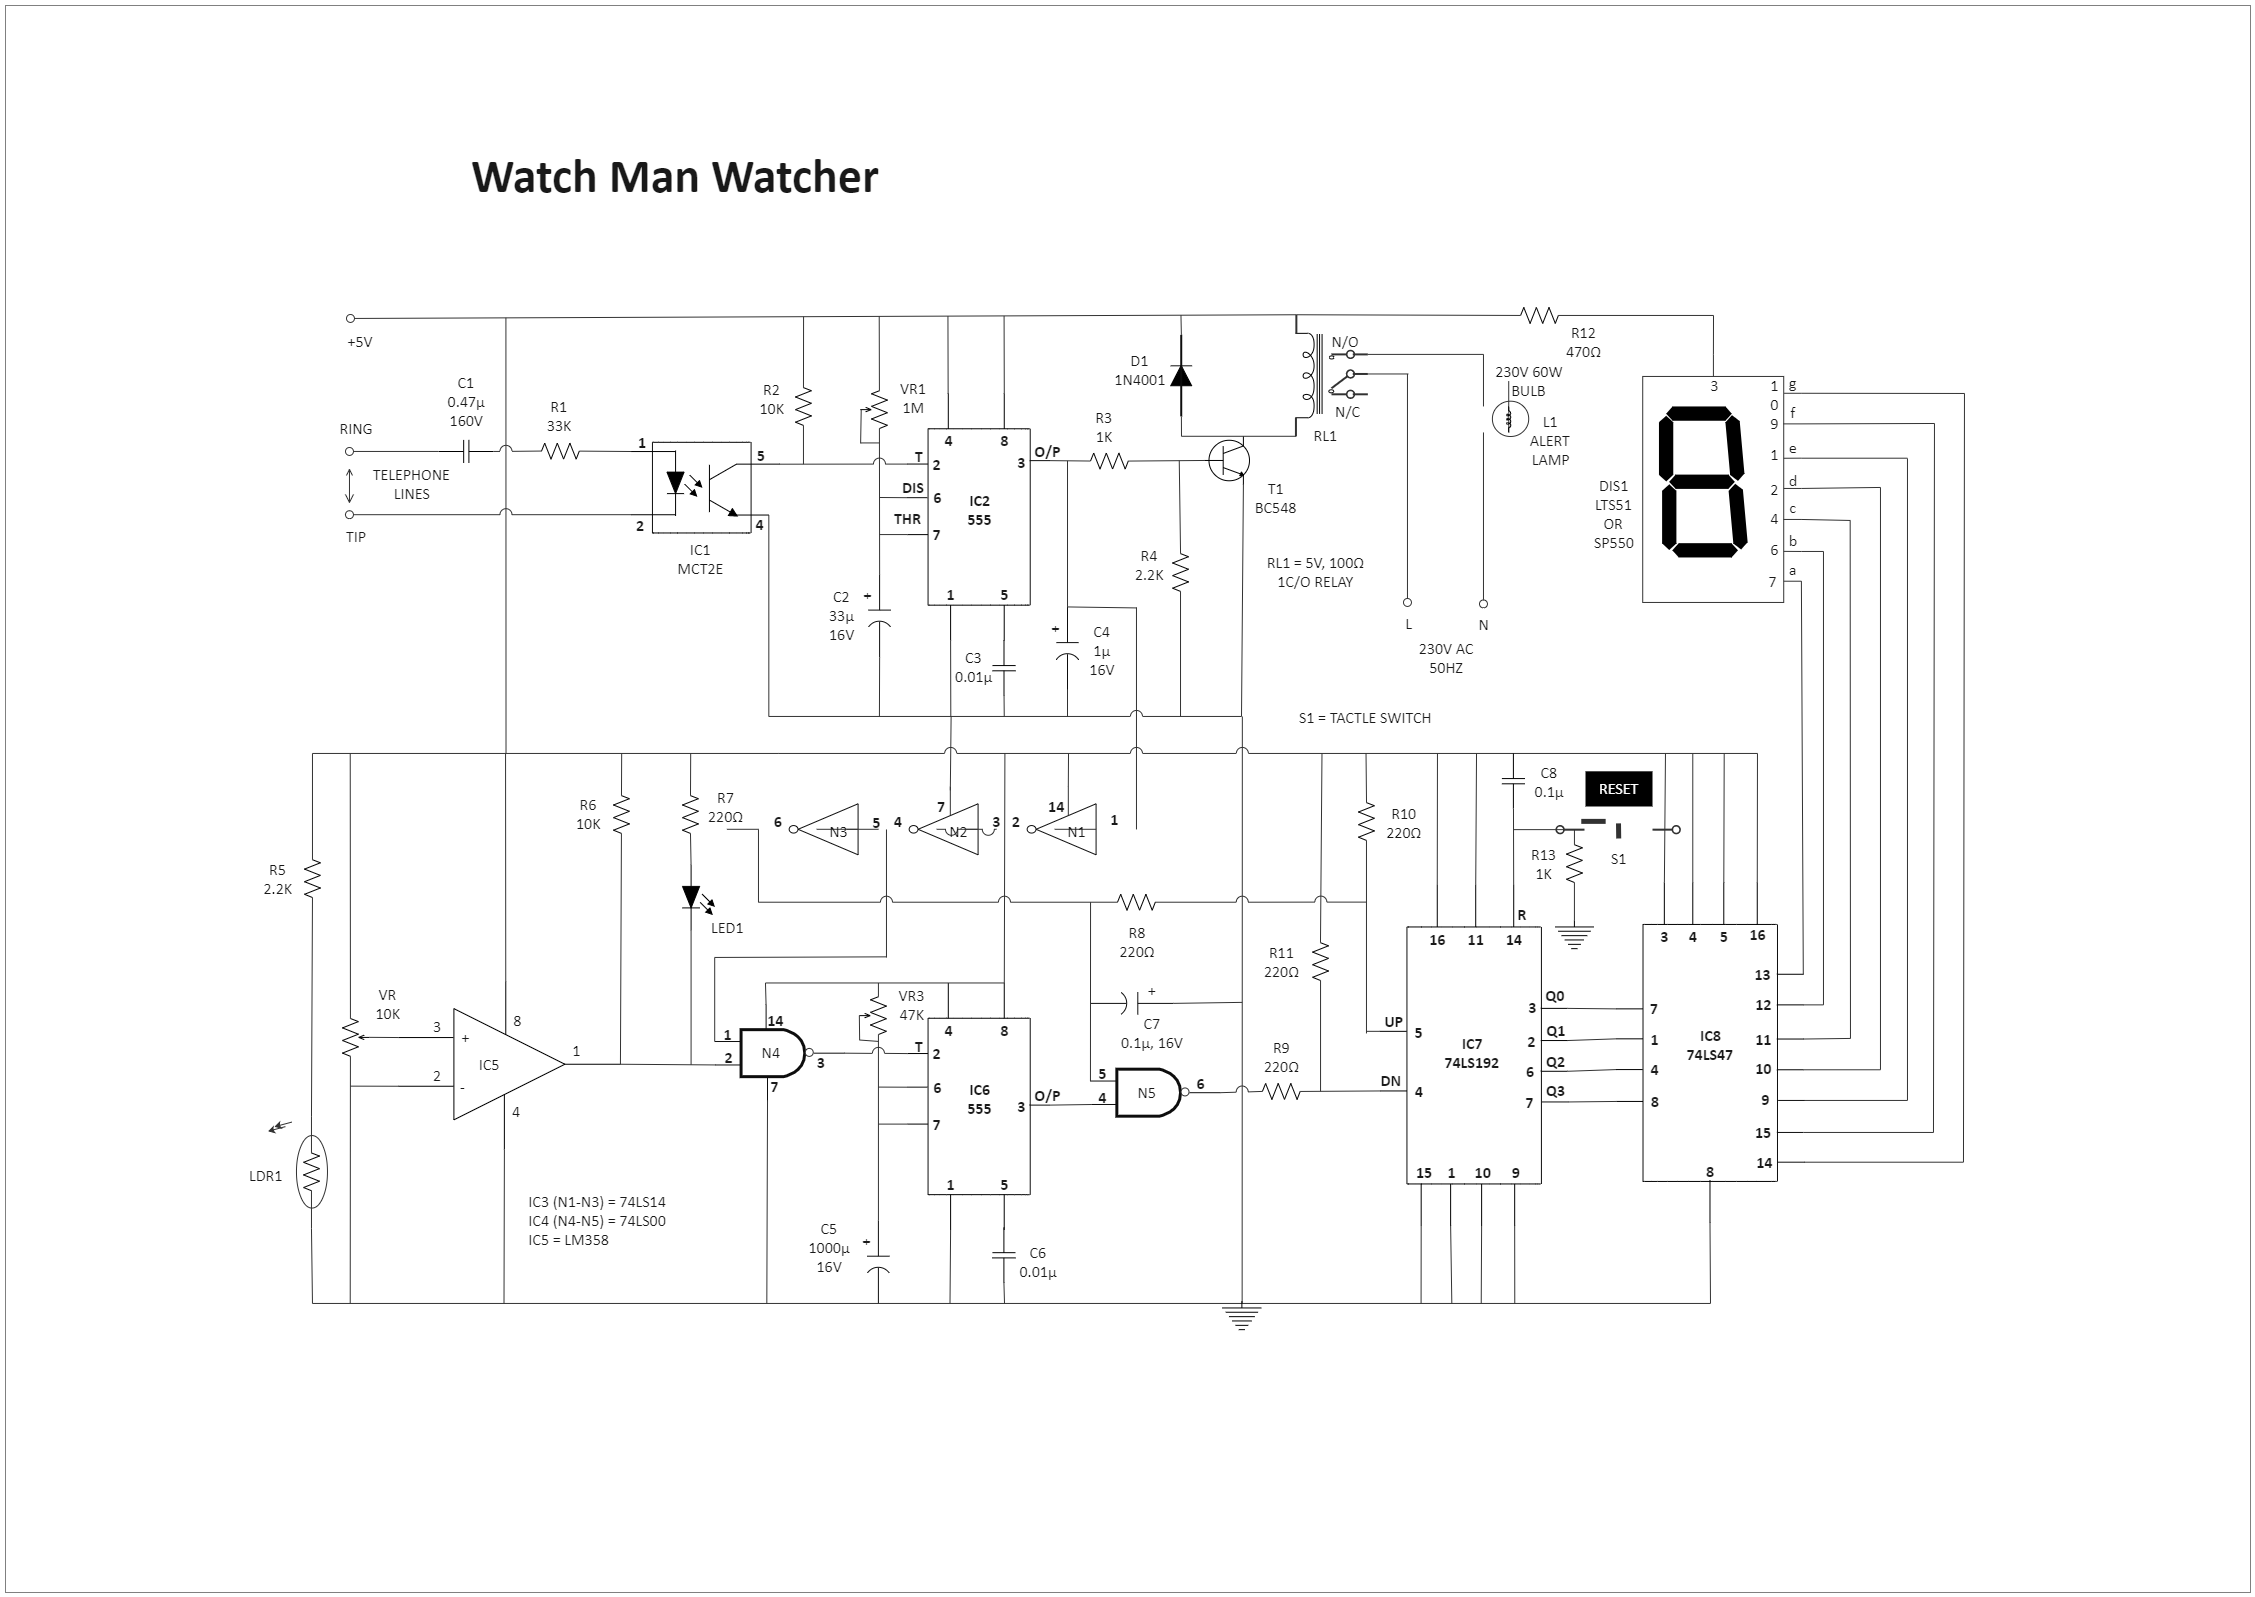 Watcher Circuit Diagram